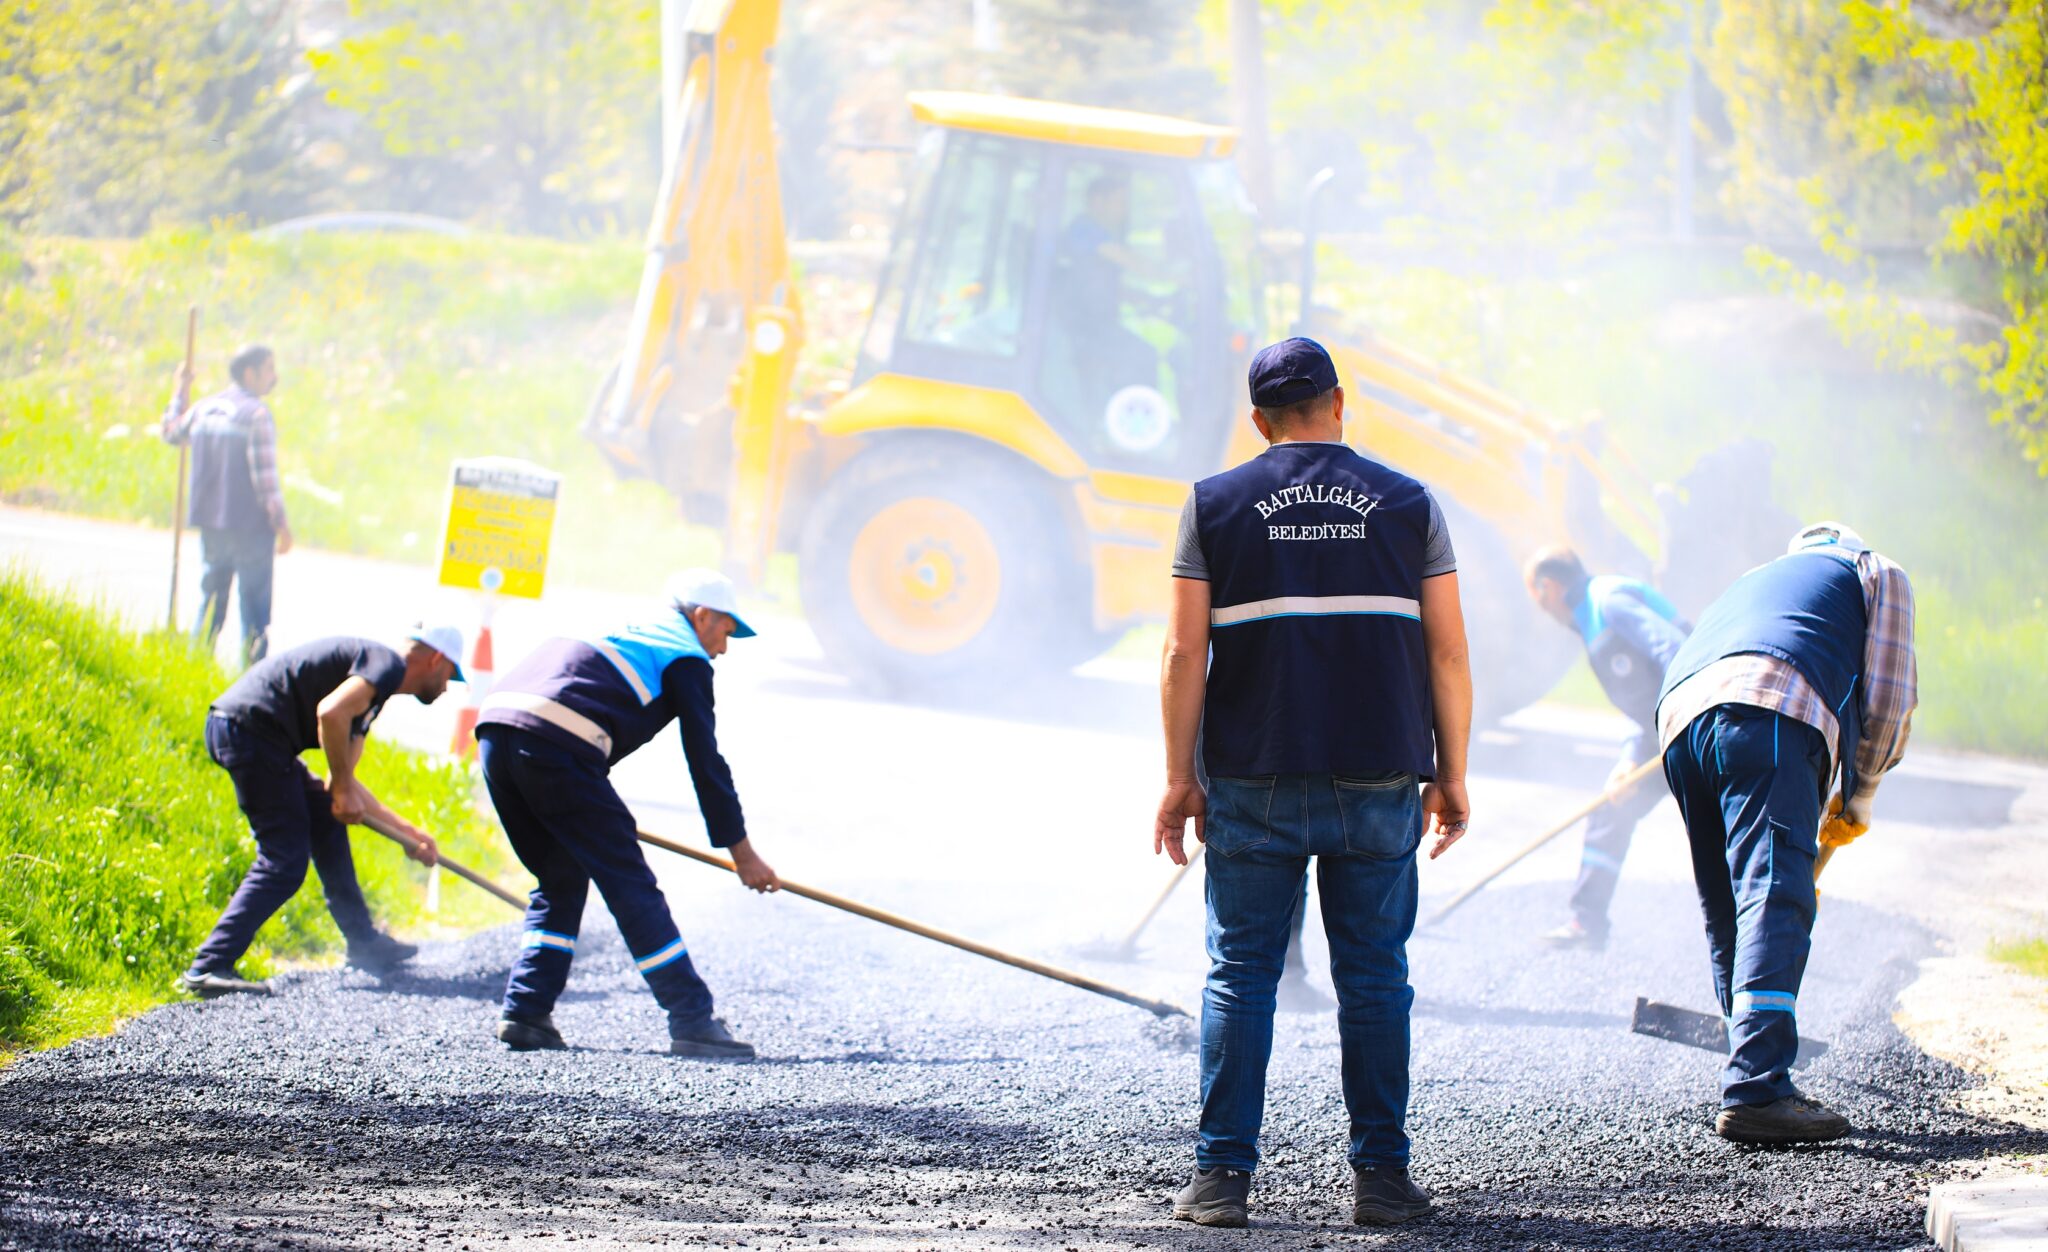 Battalgazi Belediyesi 40 Sokakta Yol ve Kaldırım Çalışmaları Gerçekleştirdi